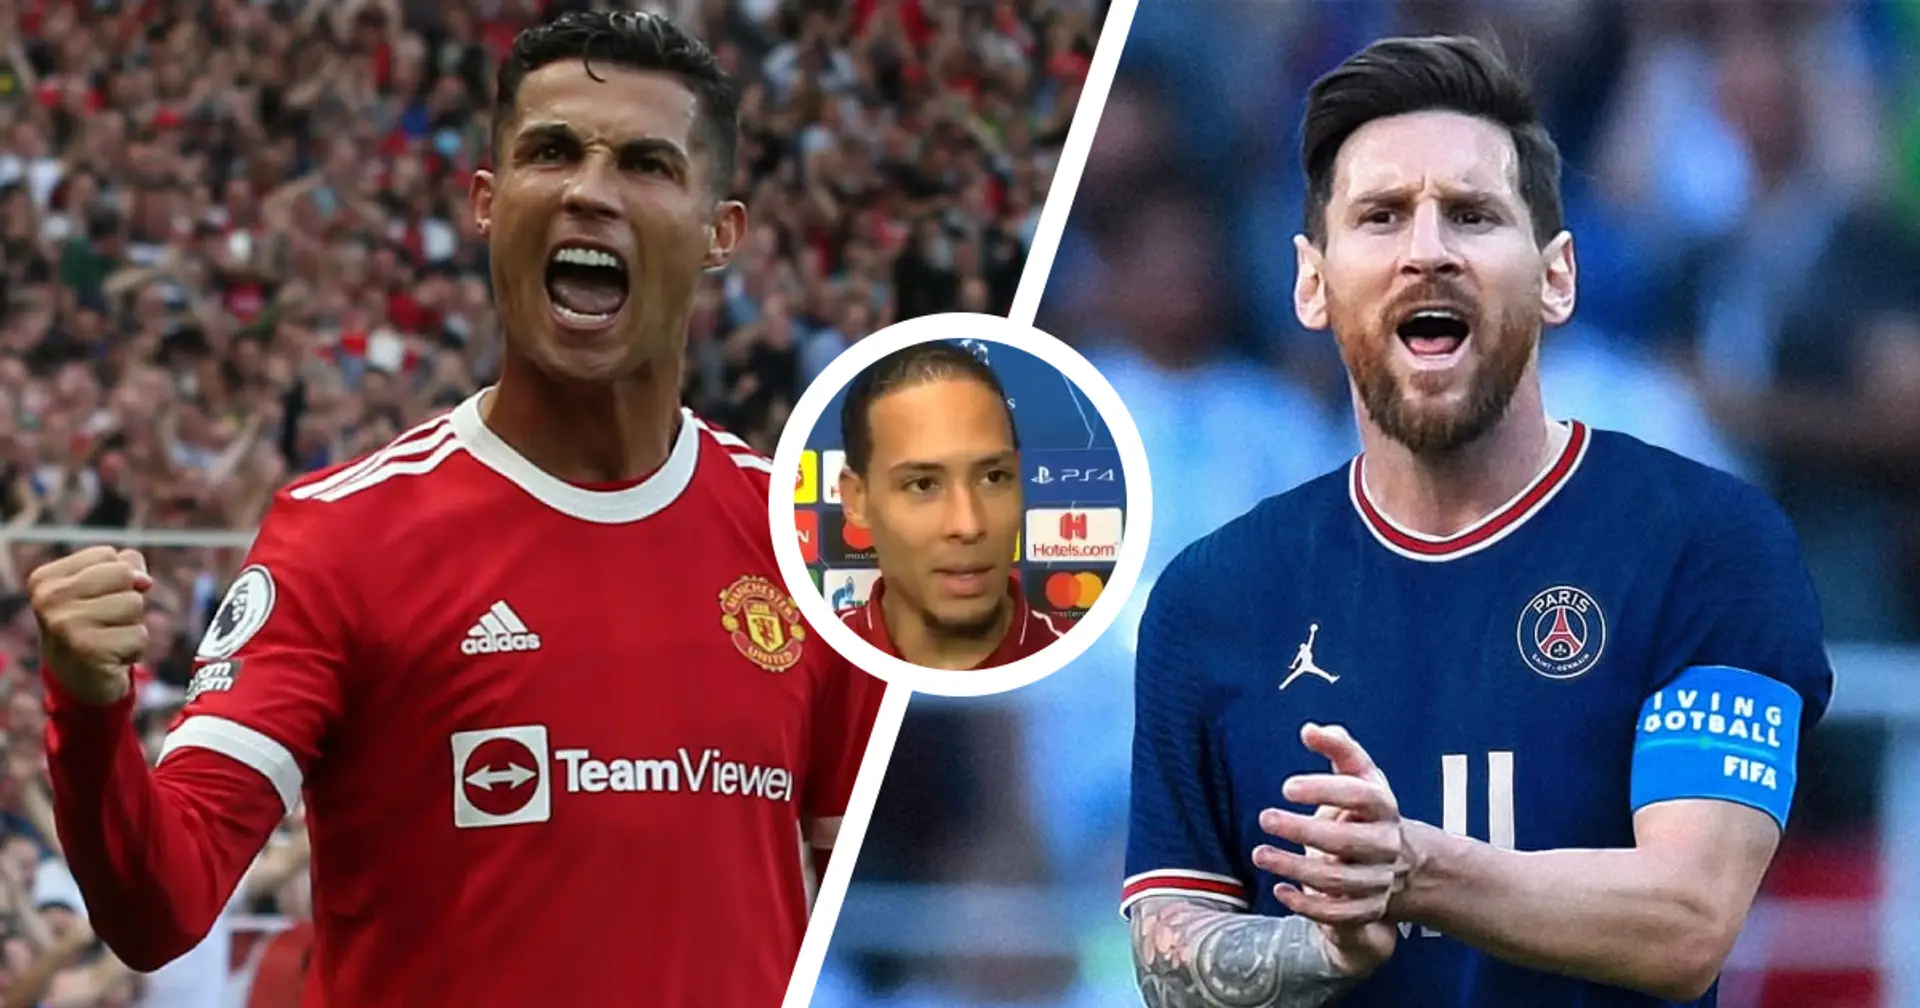 "Immer noch der Beste auf der Welt": Virgil van Dijk mischt sich in die "Cristiano Ronaldo vs. Leo Messi"-Debatte ein